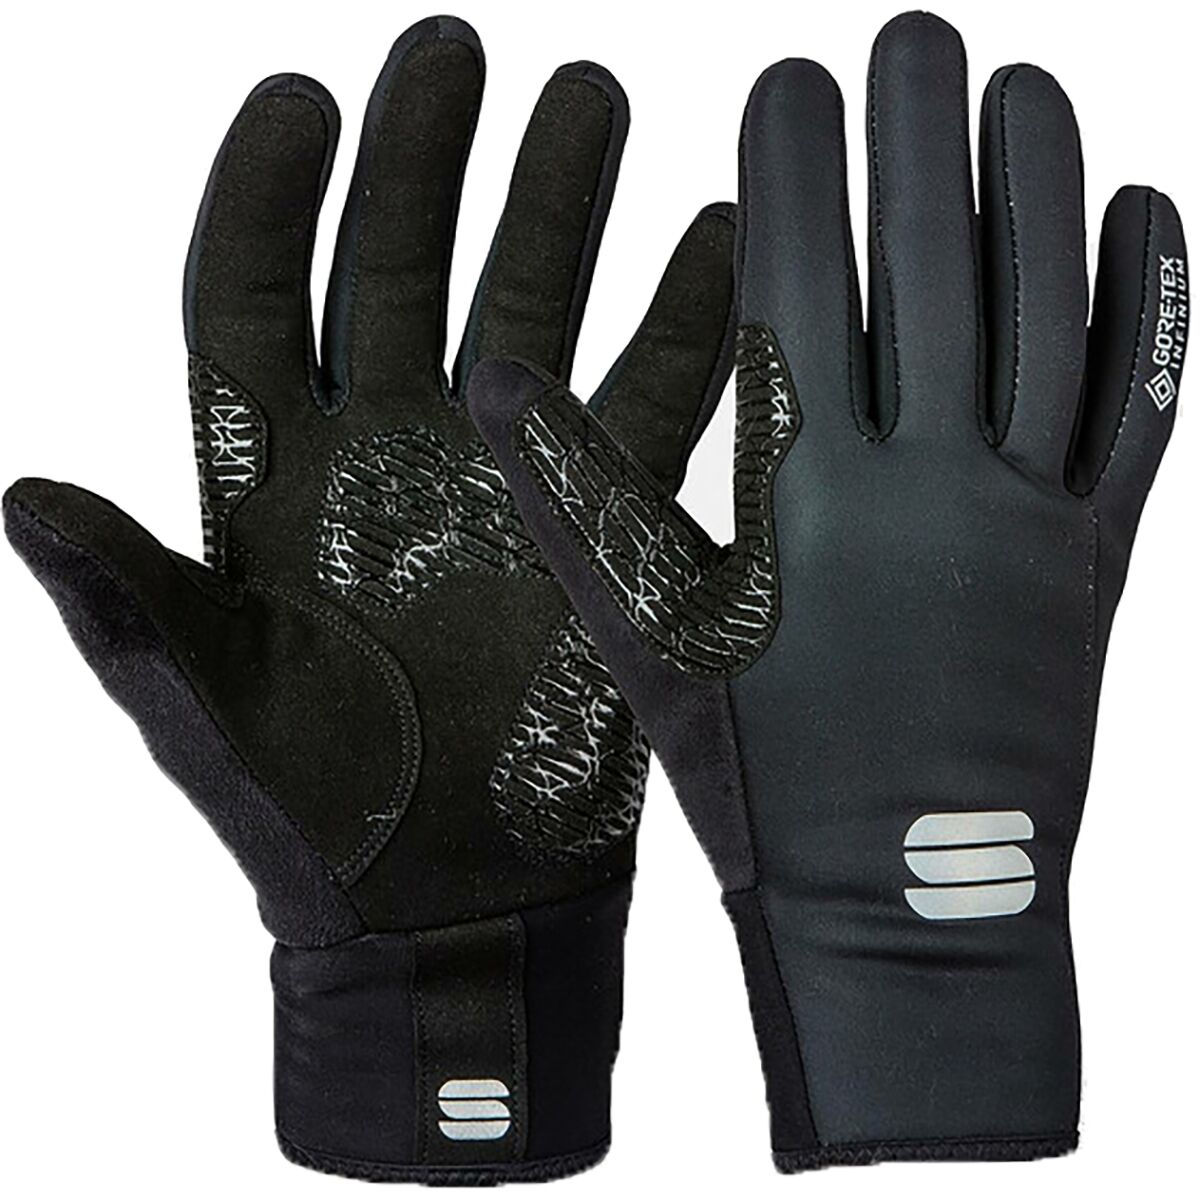 WS Essential 2 Gloves (Women's)